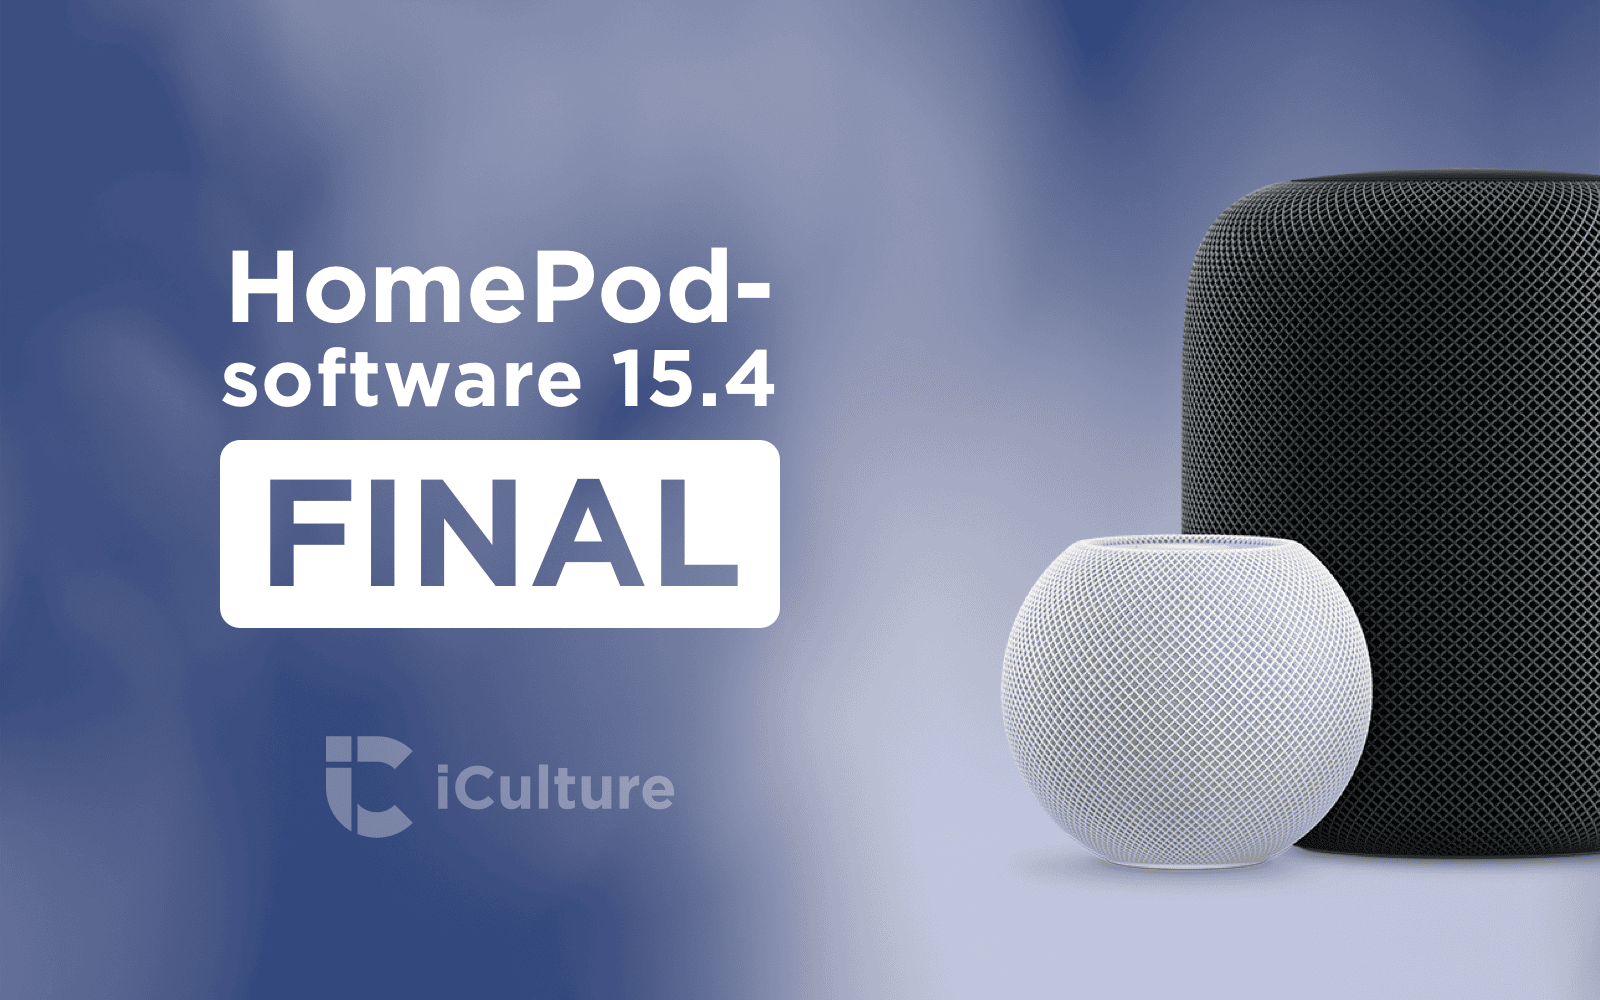 HomePod software-update 15.4 final.